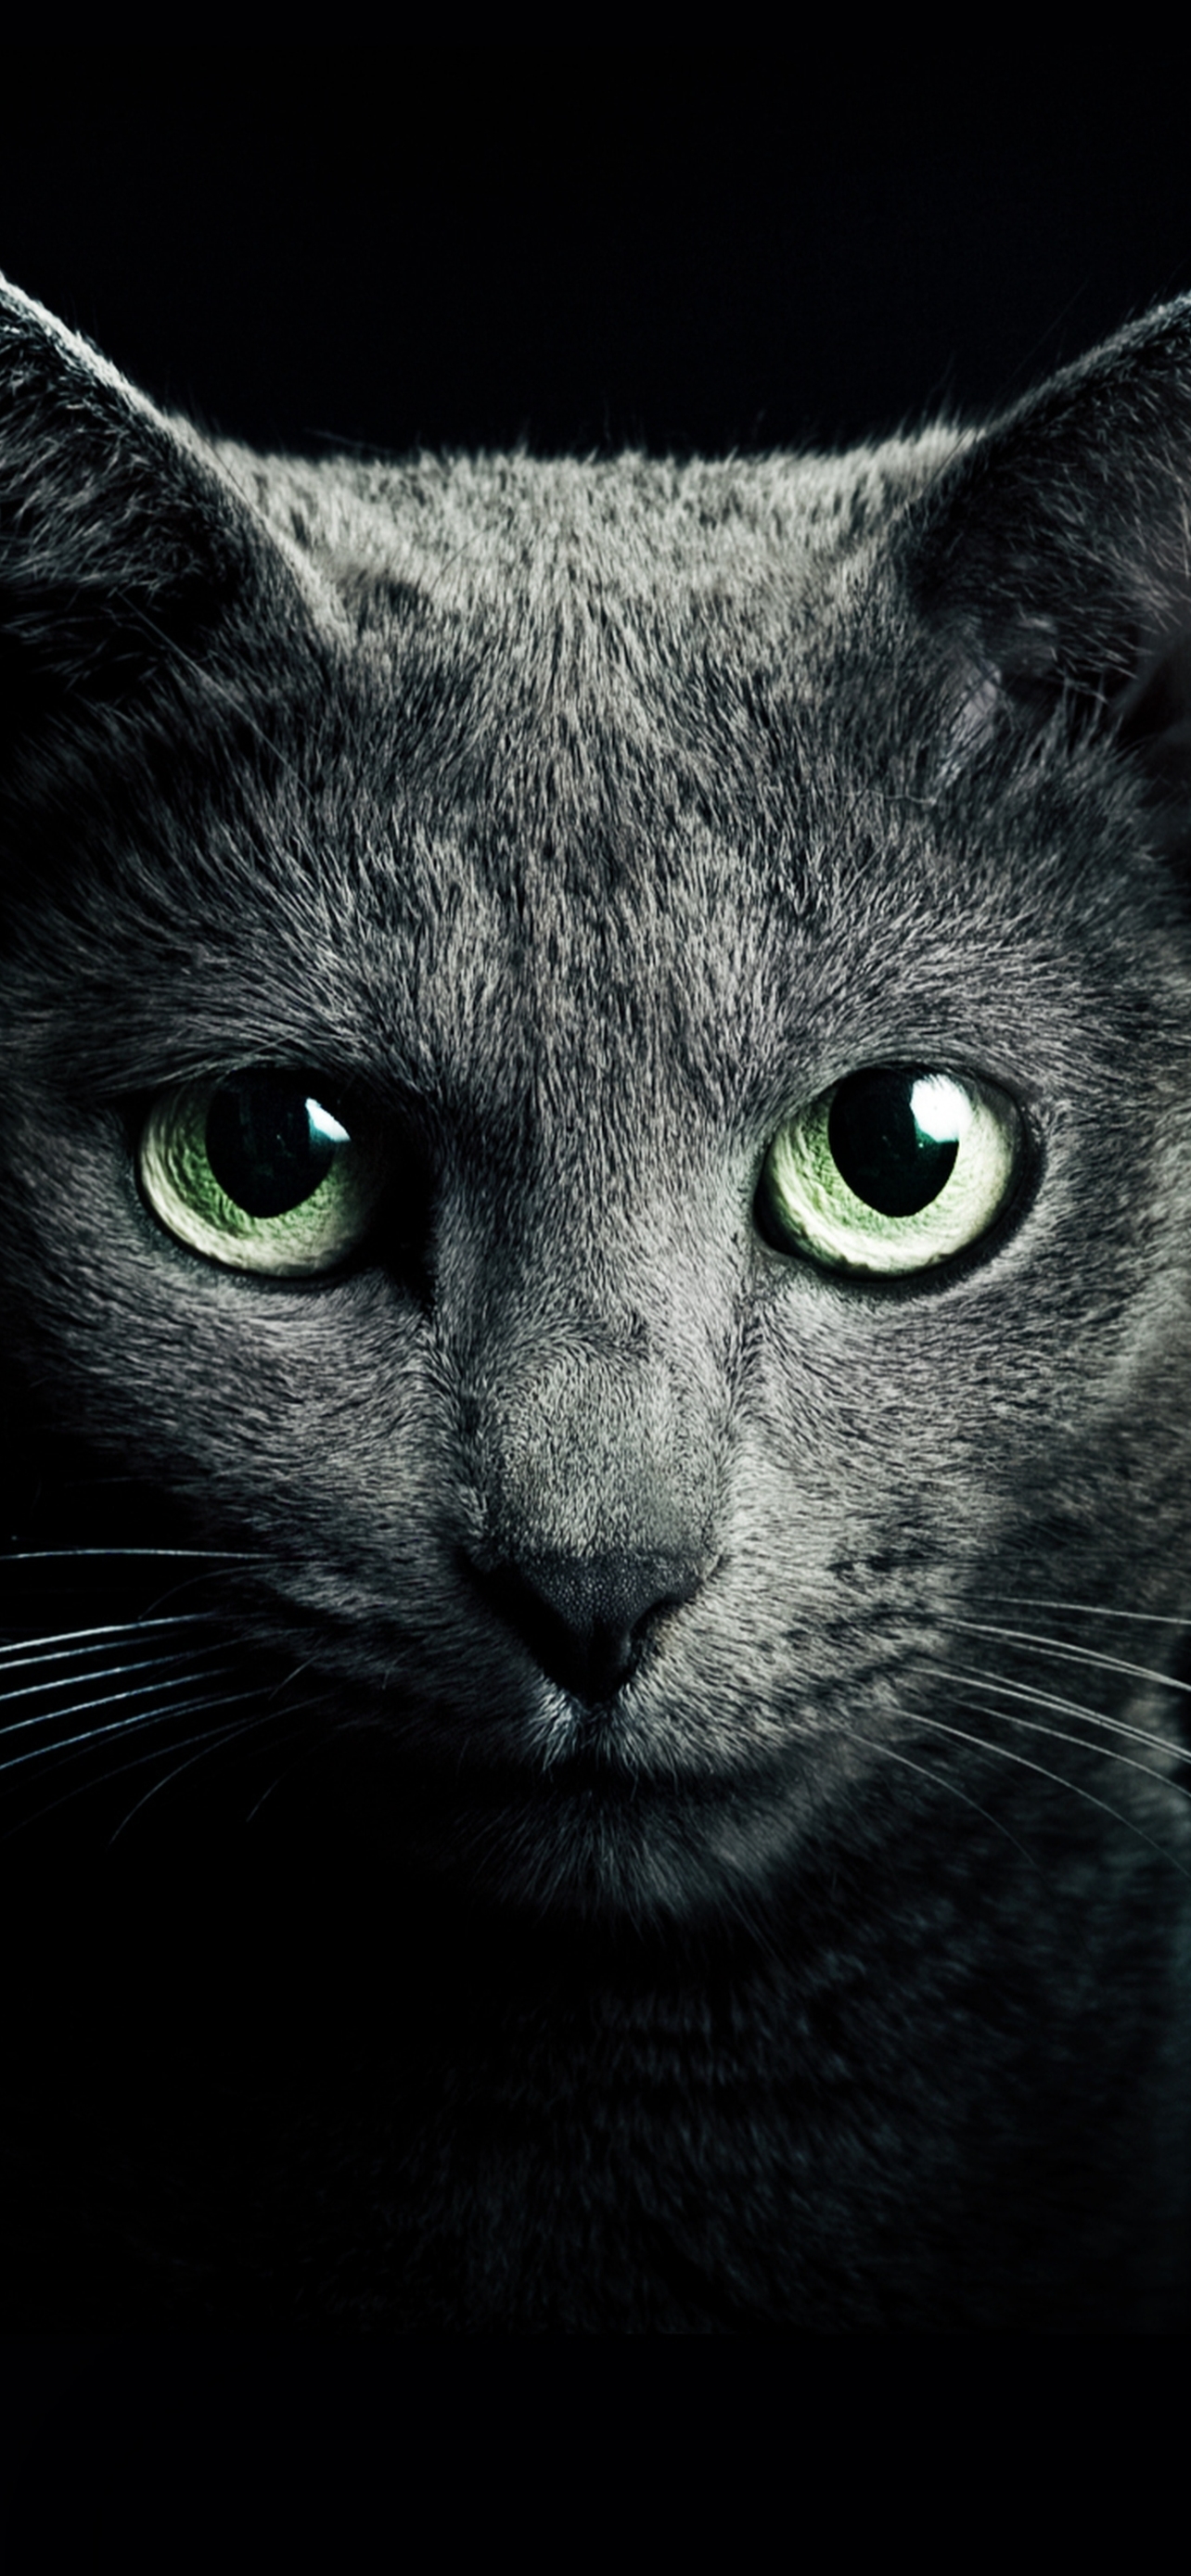 Descarga gratuita de fondo de pantalla para móvil de Animales, Gatos, Gato, Cabeza, Mirar Fijamente.